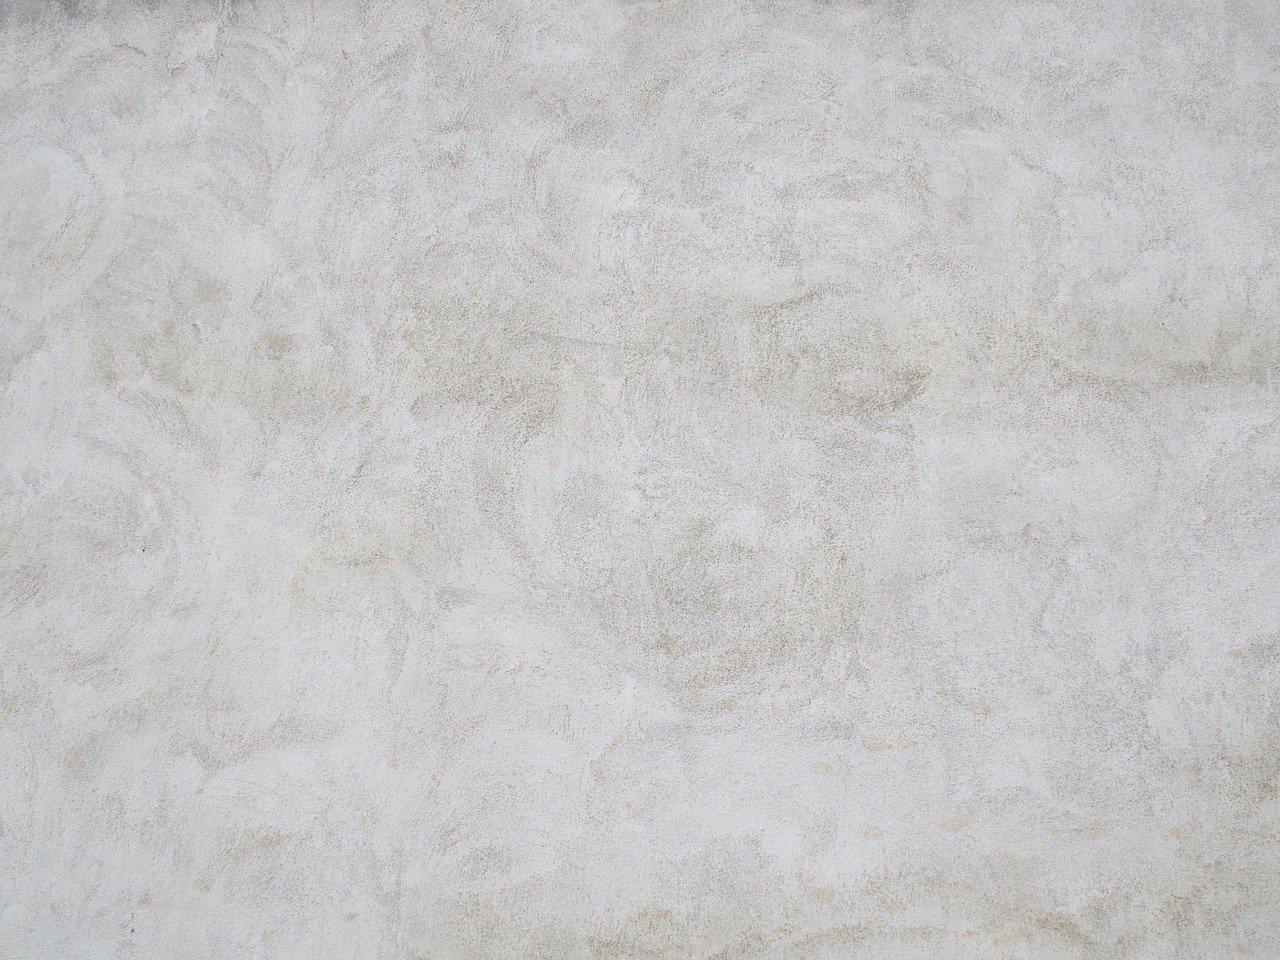 Béton désactivé à Valbonne 06560 | Tarif béton lavé décoratif